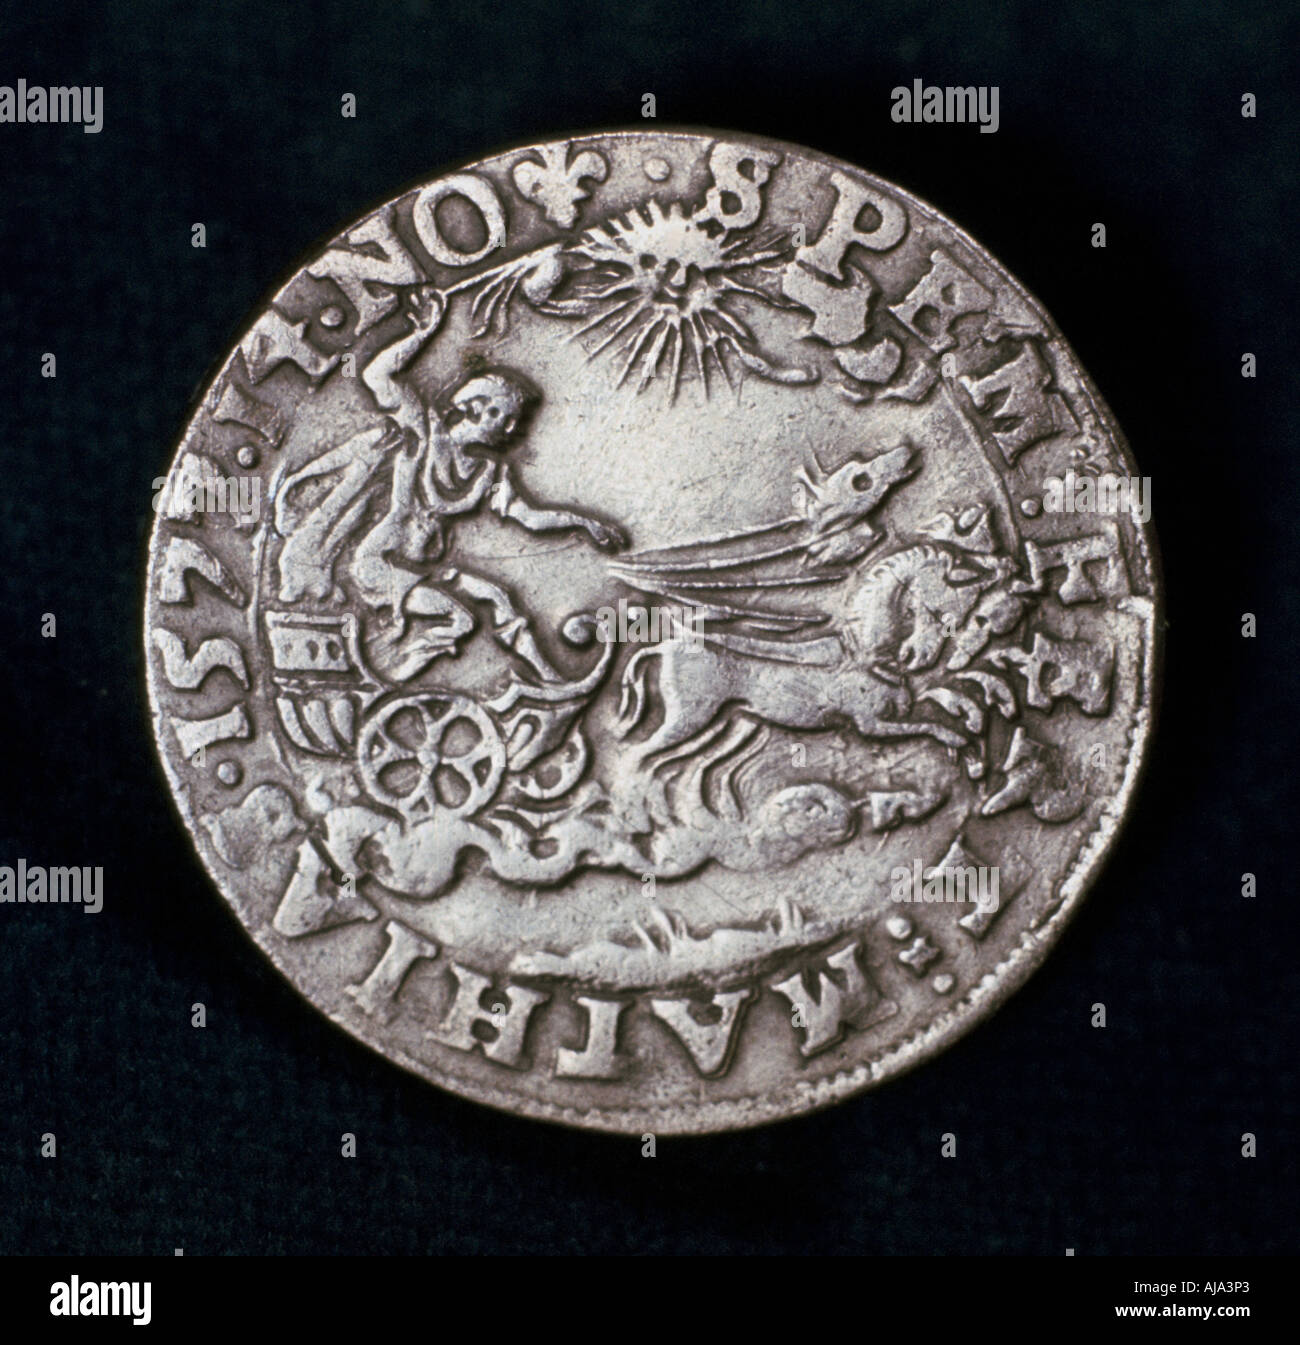 El reverso de la medalla conmemorativa de la brillante cometa de 1577. Artista: Desconocido Foto de stock